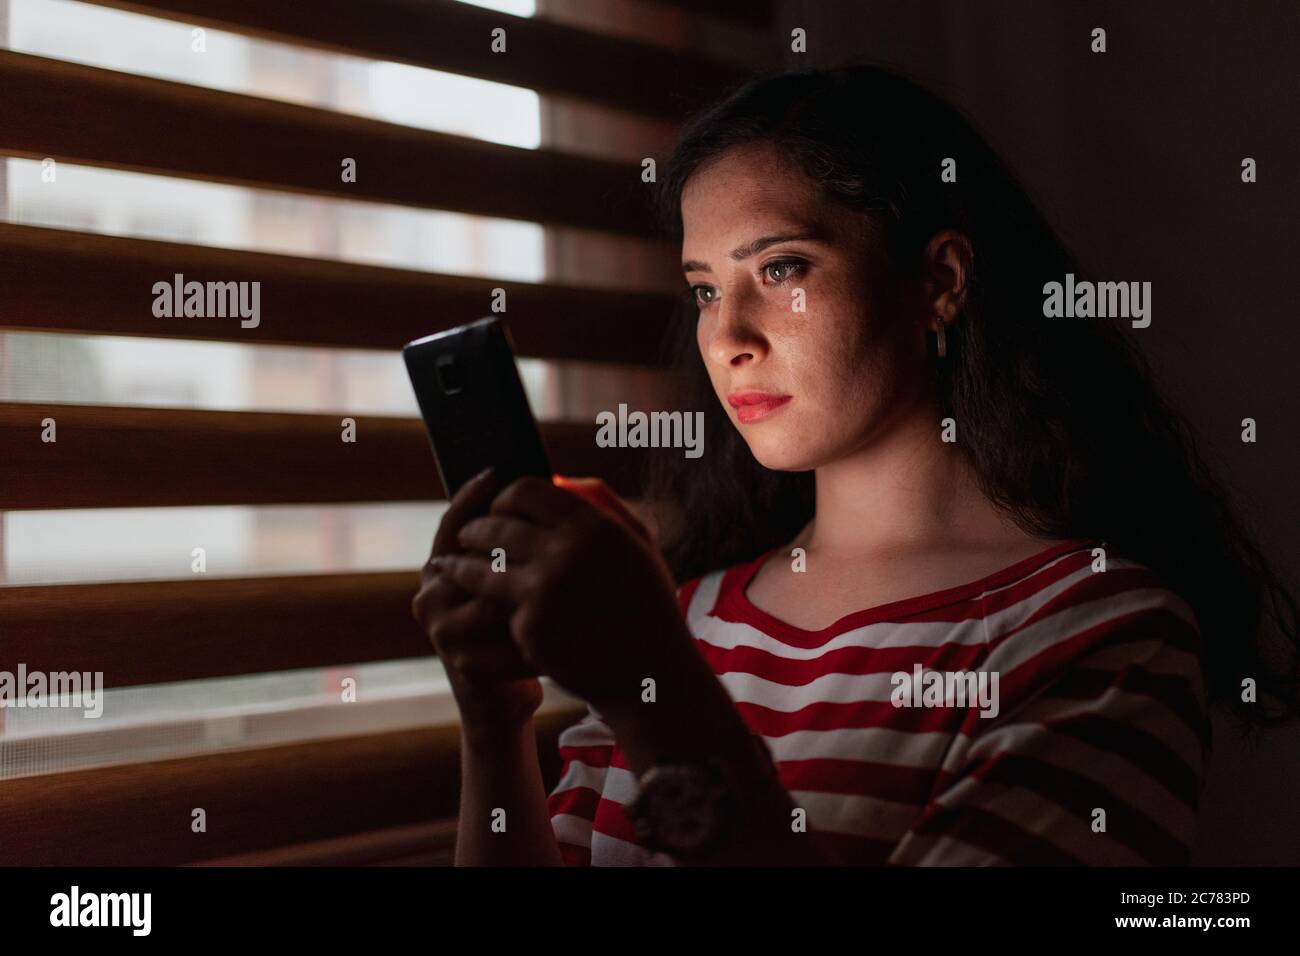 Jeune et sérieuse femme regardant un smartphone dans une pièce sombre Banque D'Images